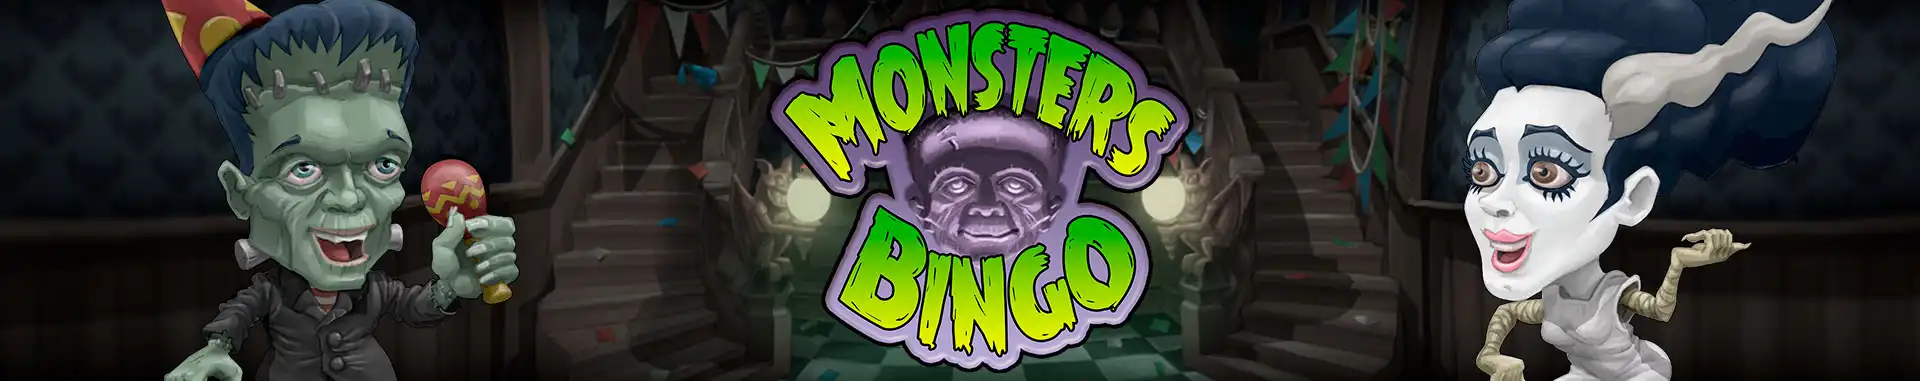 Video Bingo Online Monster